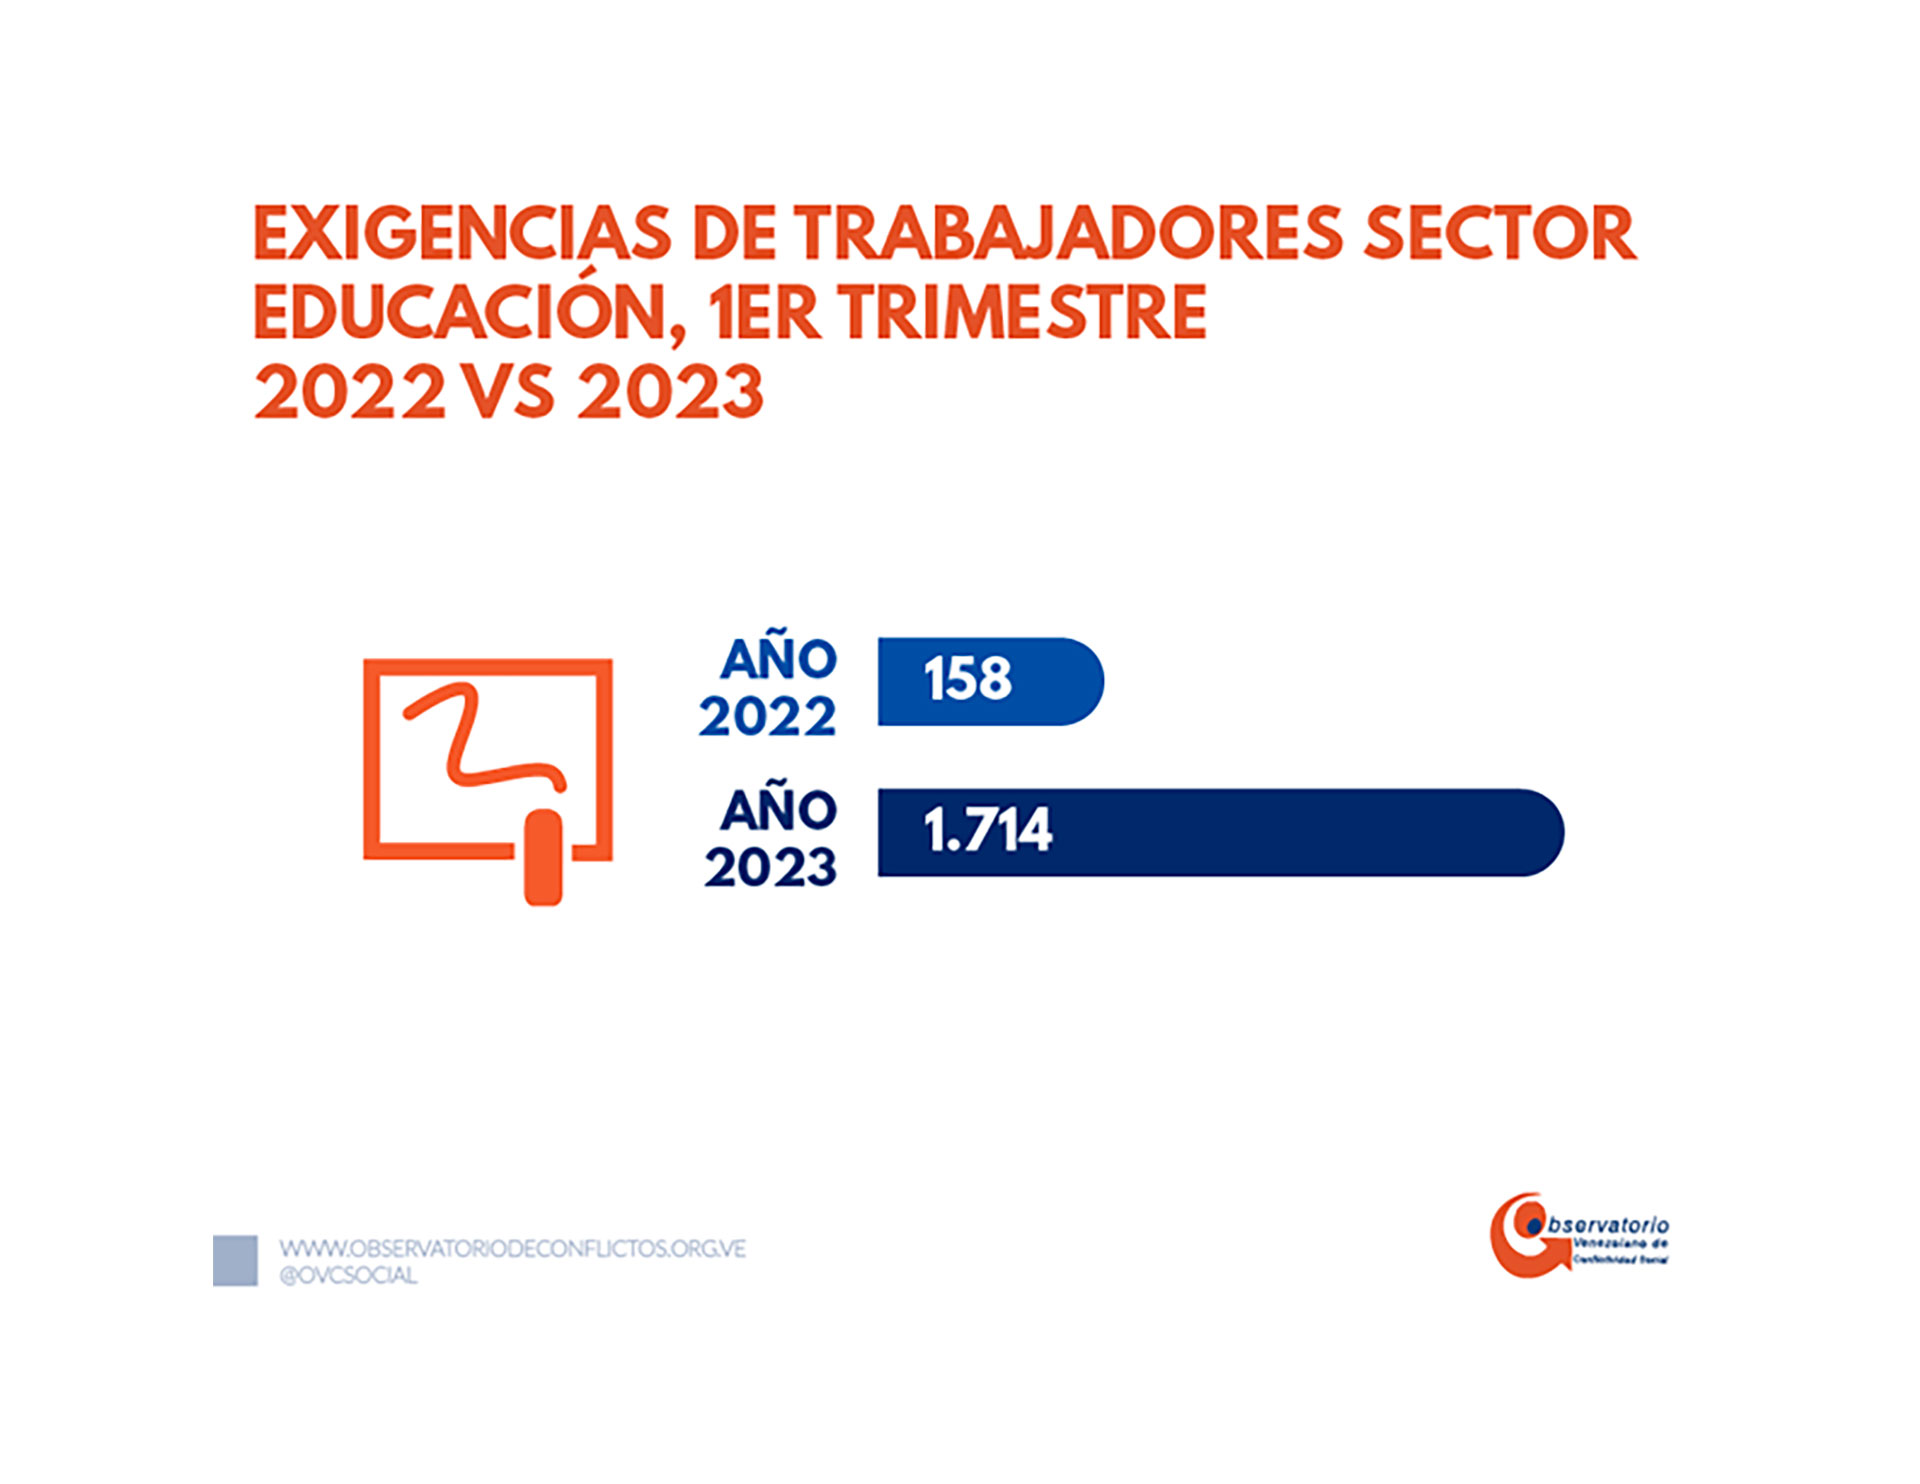 Las exigencias de trabajadores del sector de educación (Crédito: Observatorio Venezolano de Conflictividad Social)